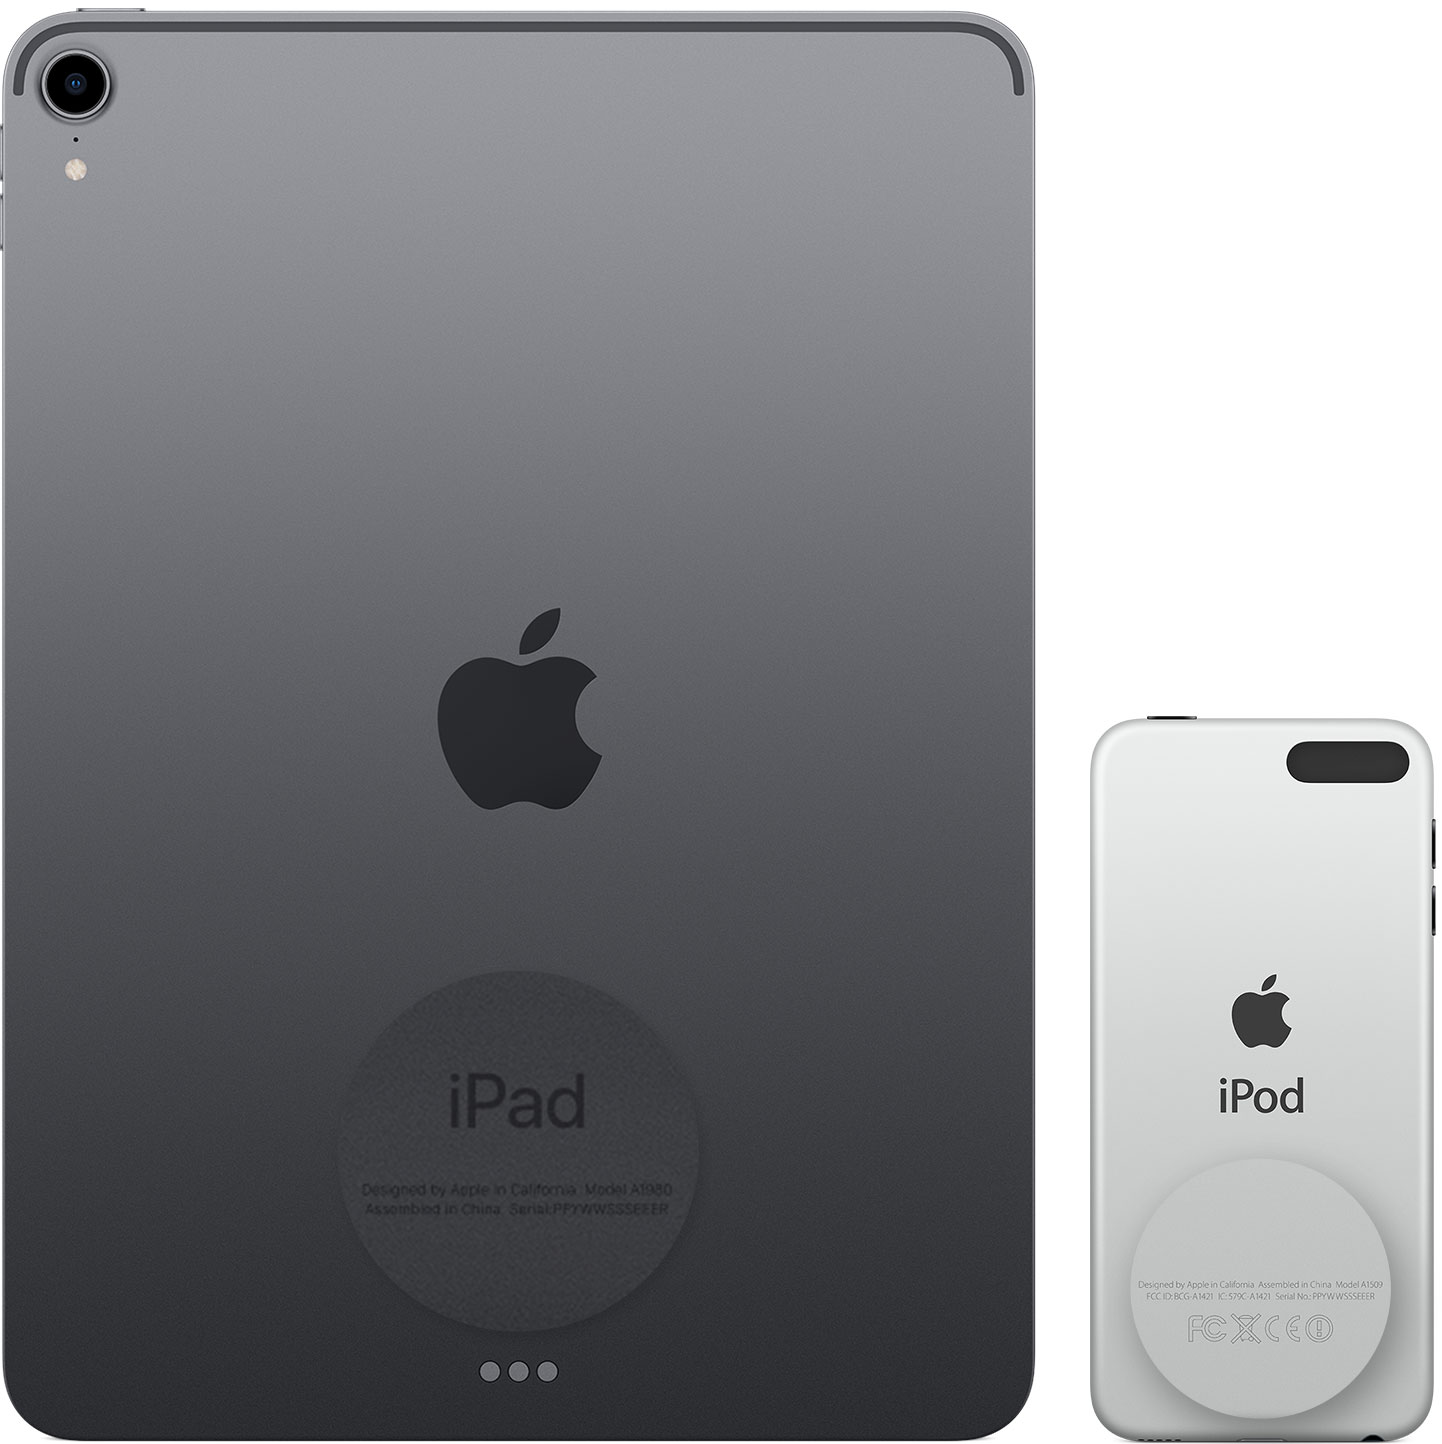 התמונה מציגה את החלק האחורי של ה-iPad וה-iPod touch‏